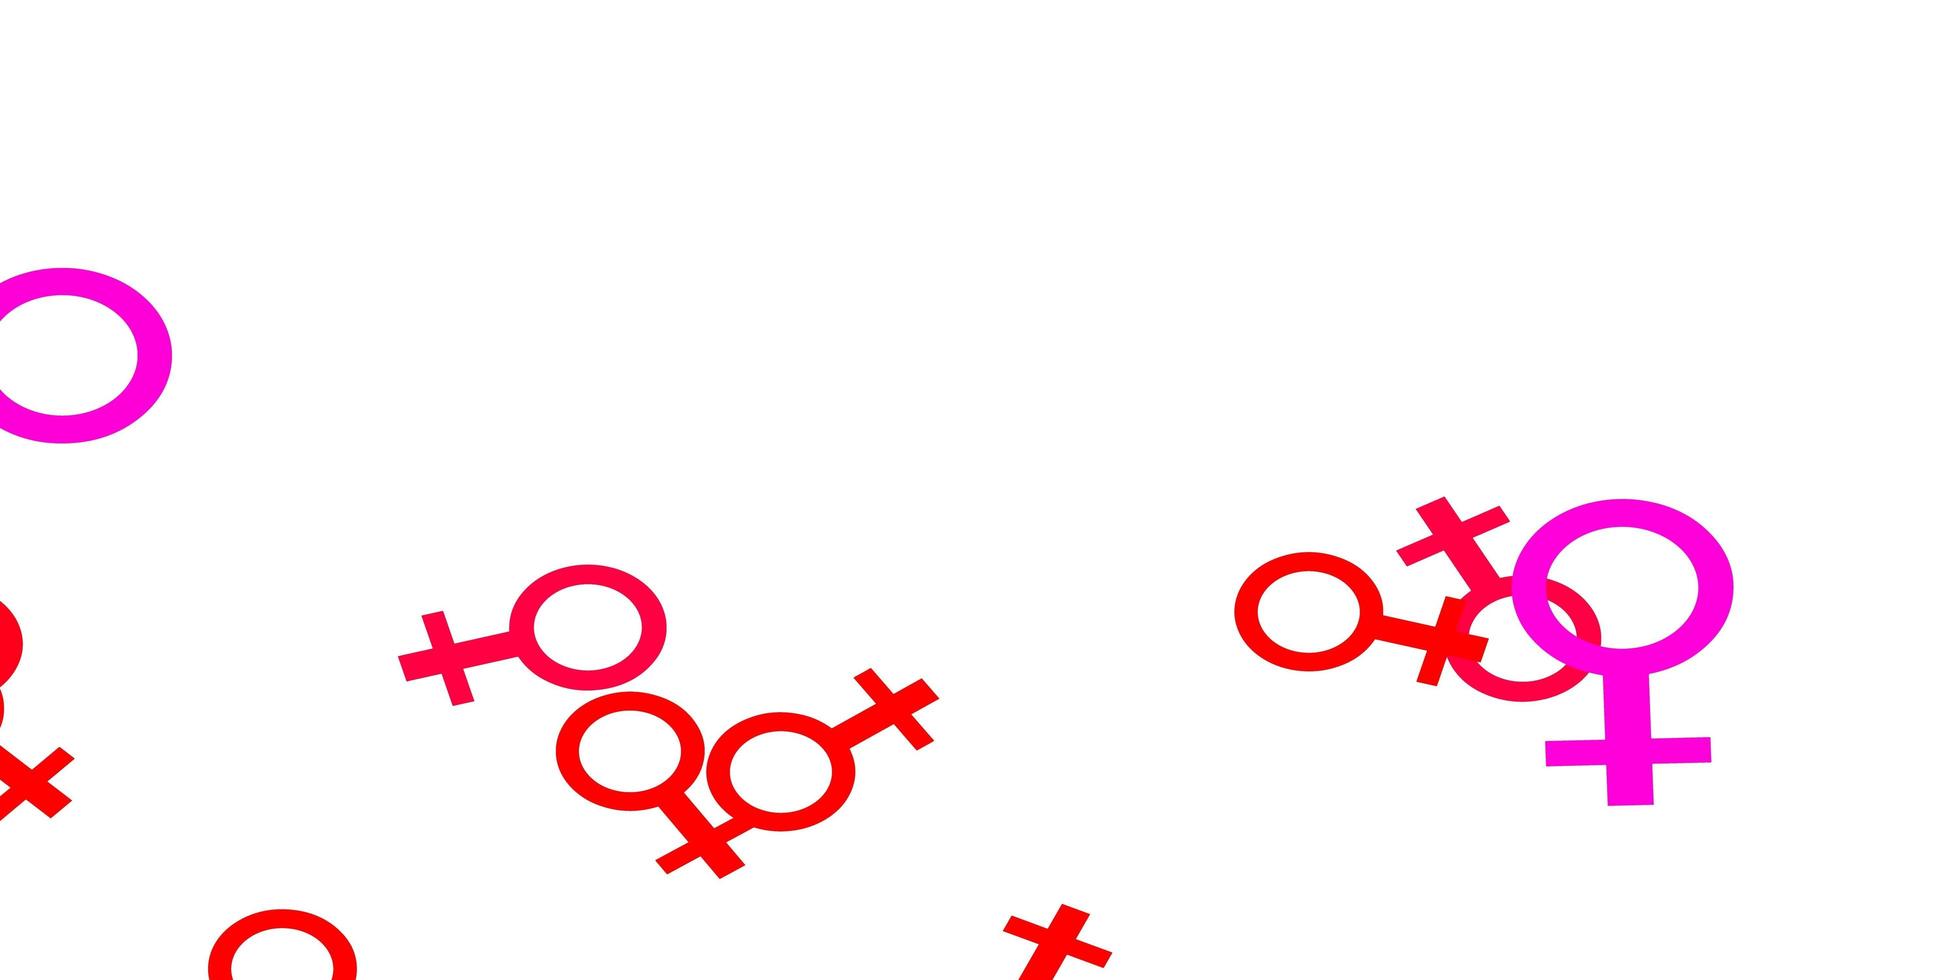 trama vettoriale rosa chiaro con simboli dei diritti delle donne.